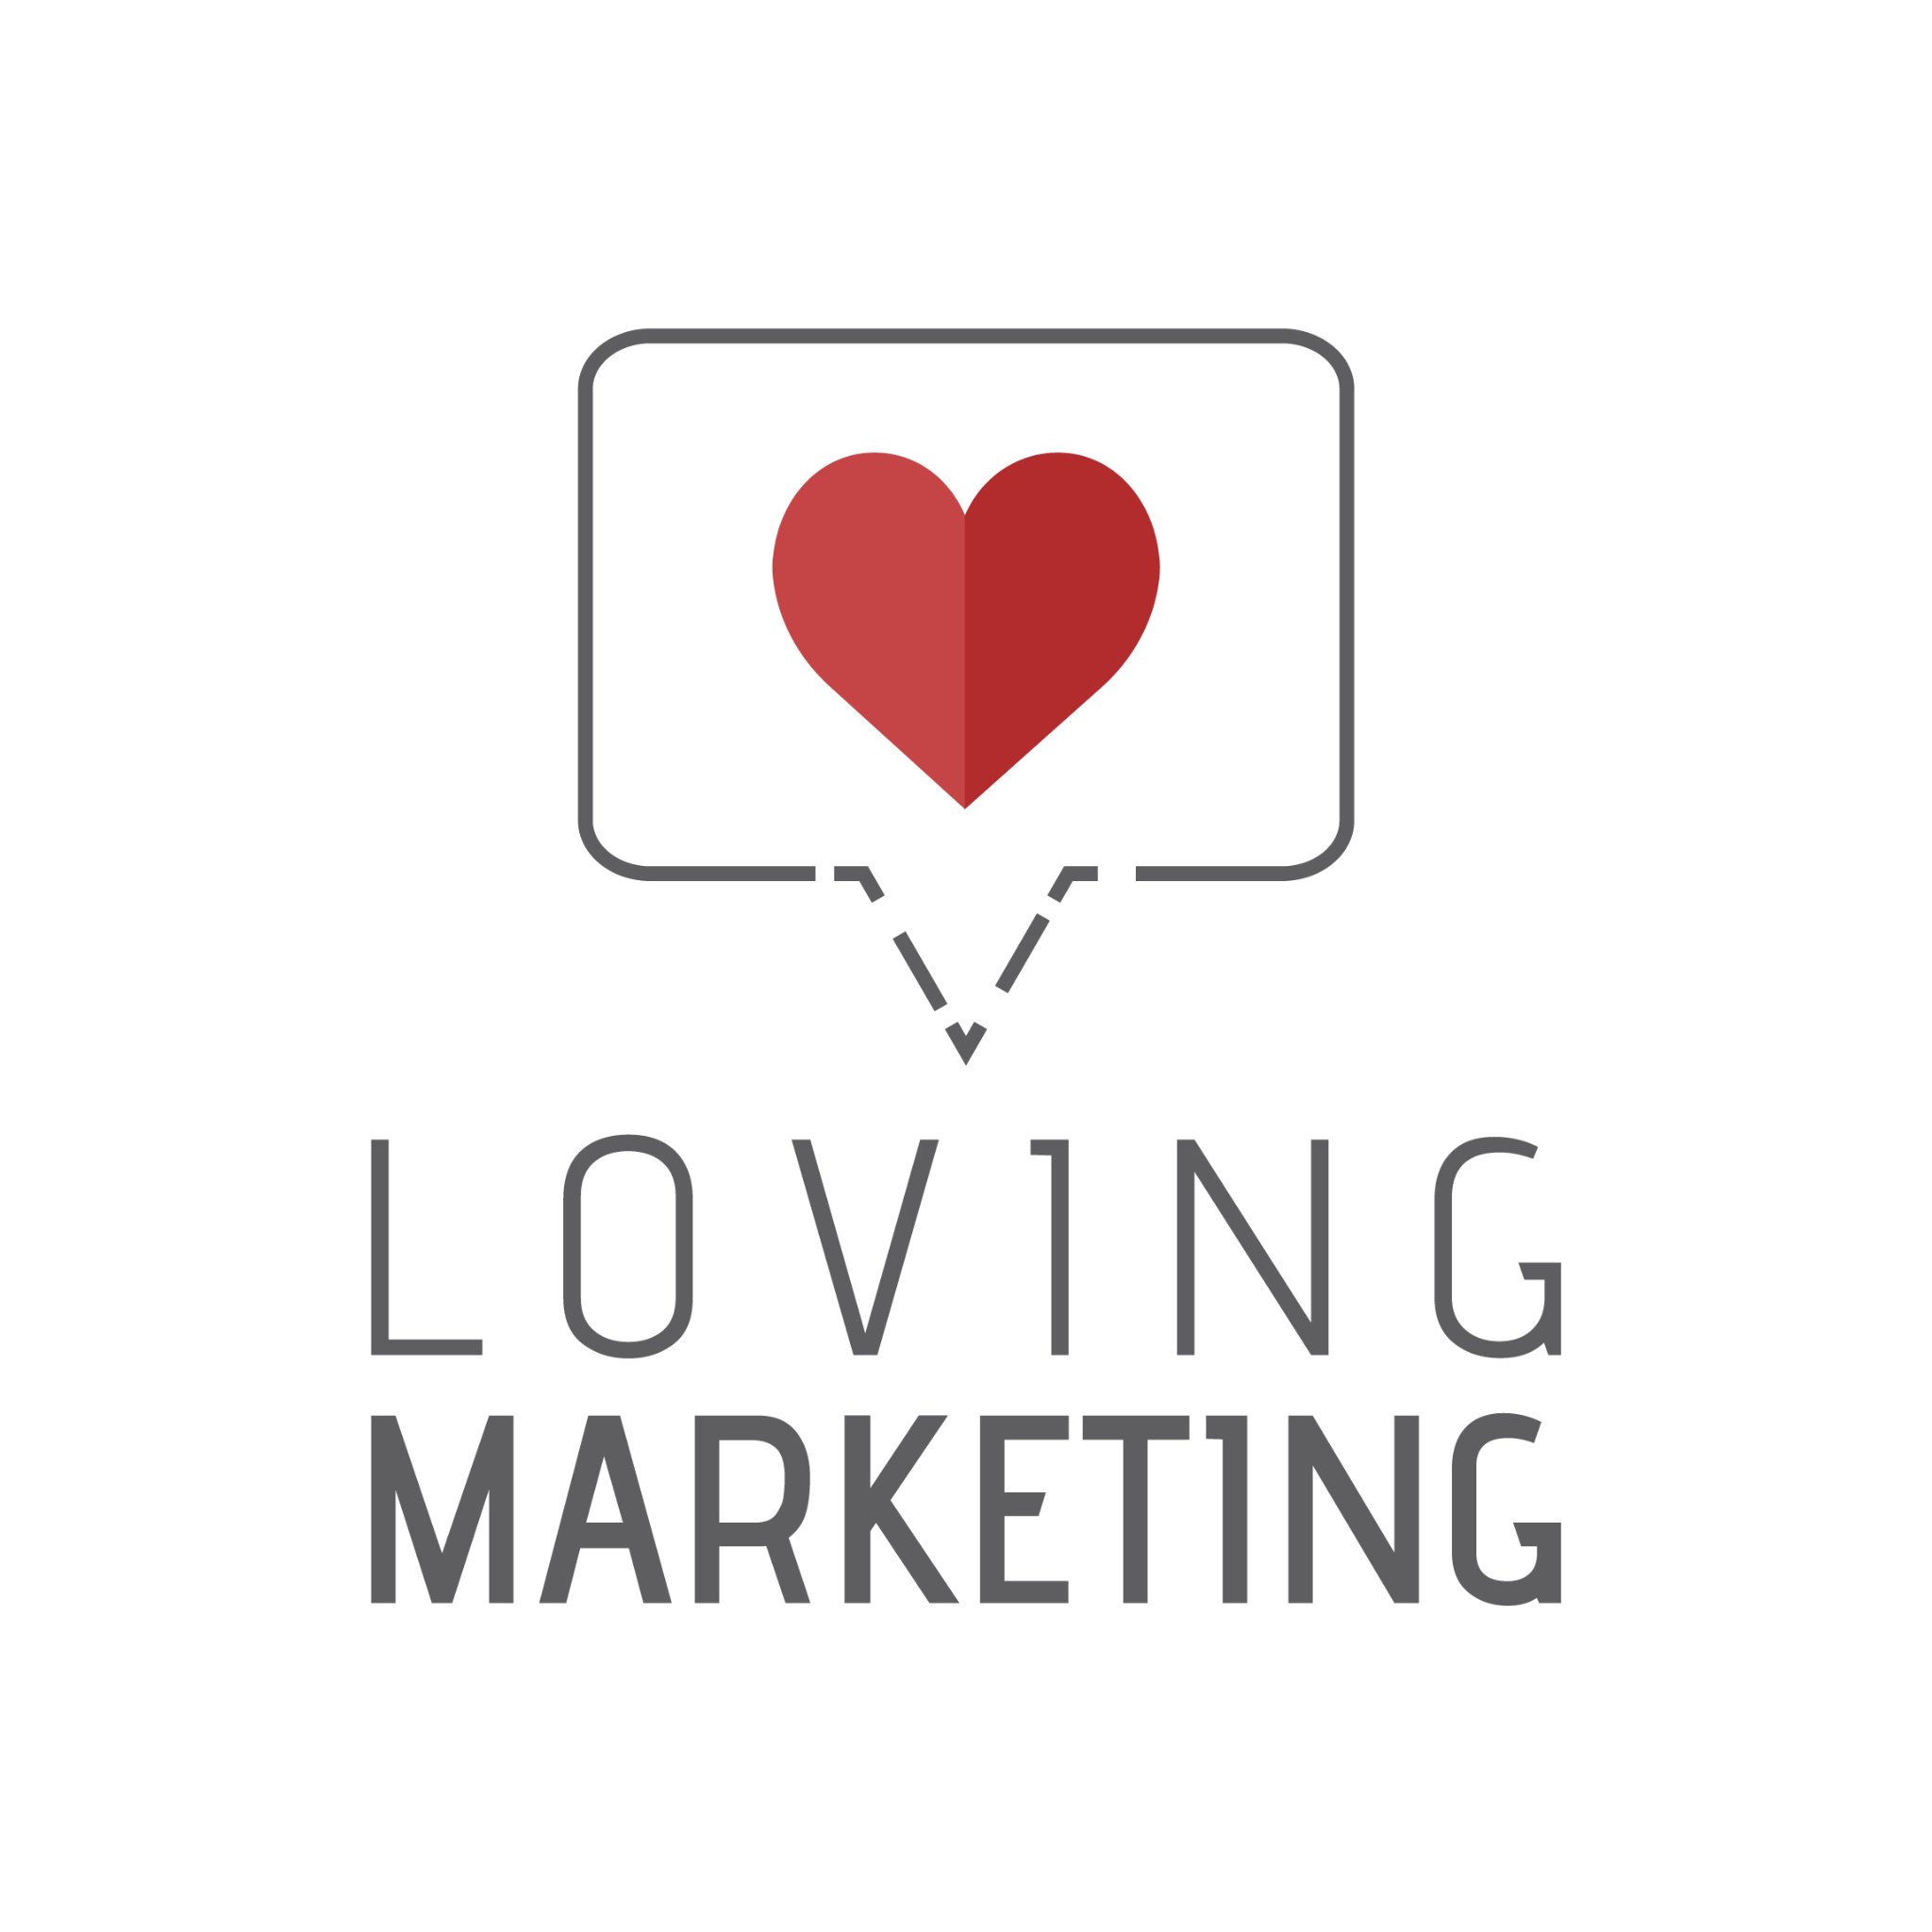 Agencia de #MarketingOnline y Comunicación. Especialistas en #InboudMarketing. Aumentamos ventas enamorando a tu audiencia. ❤